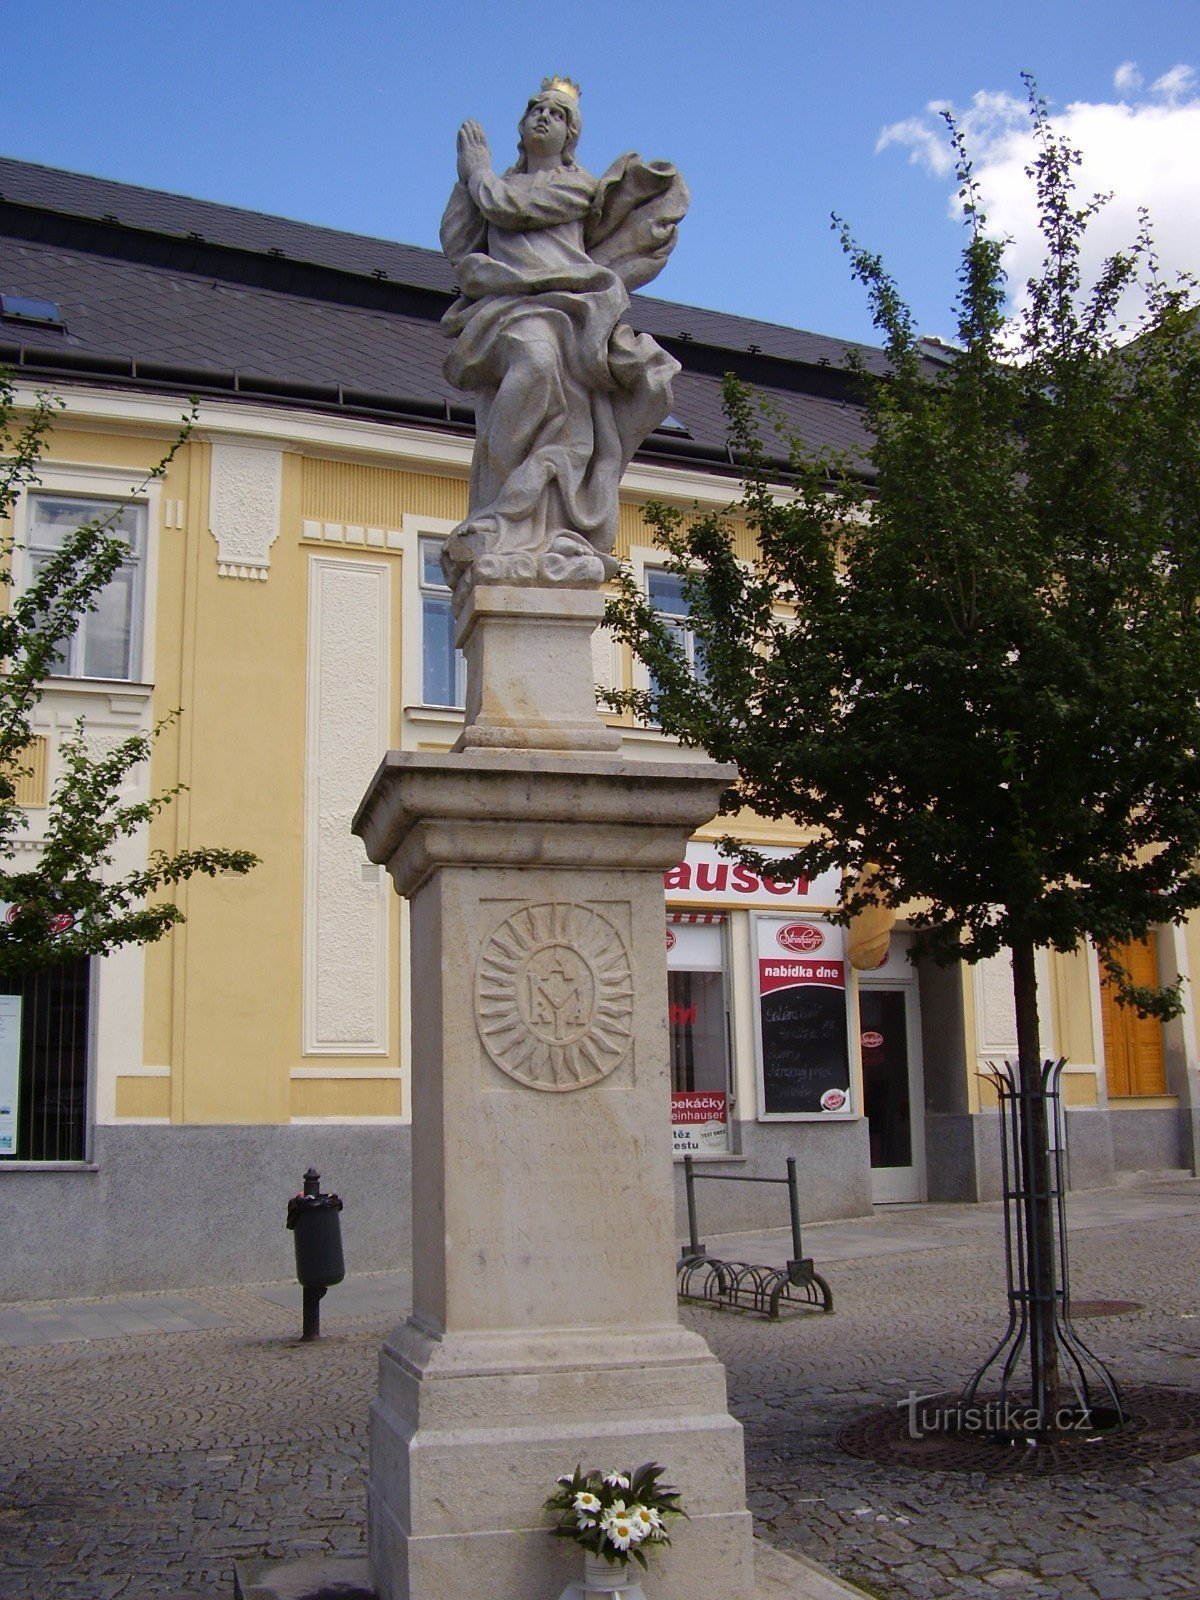 ボスコヴィツェのバロック彫刻